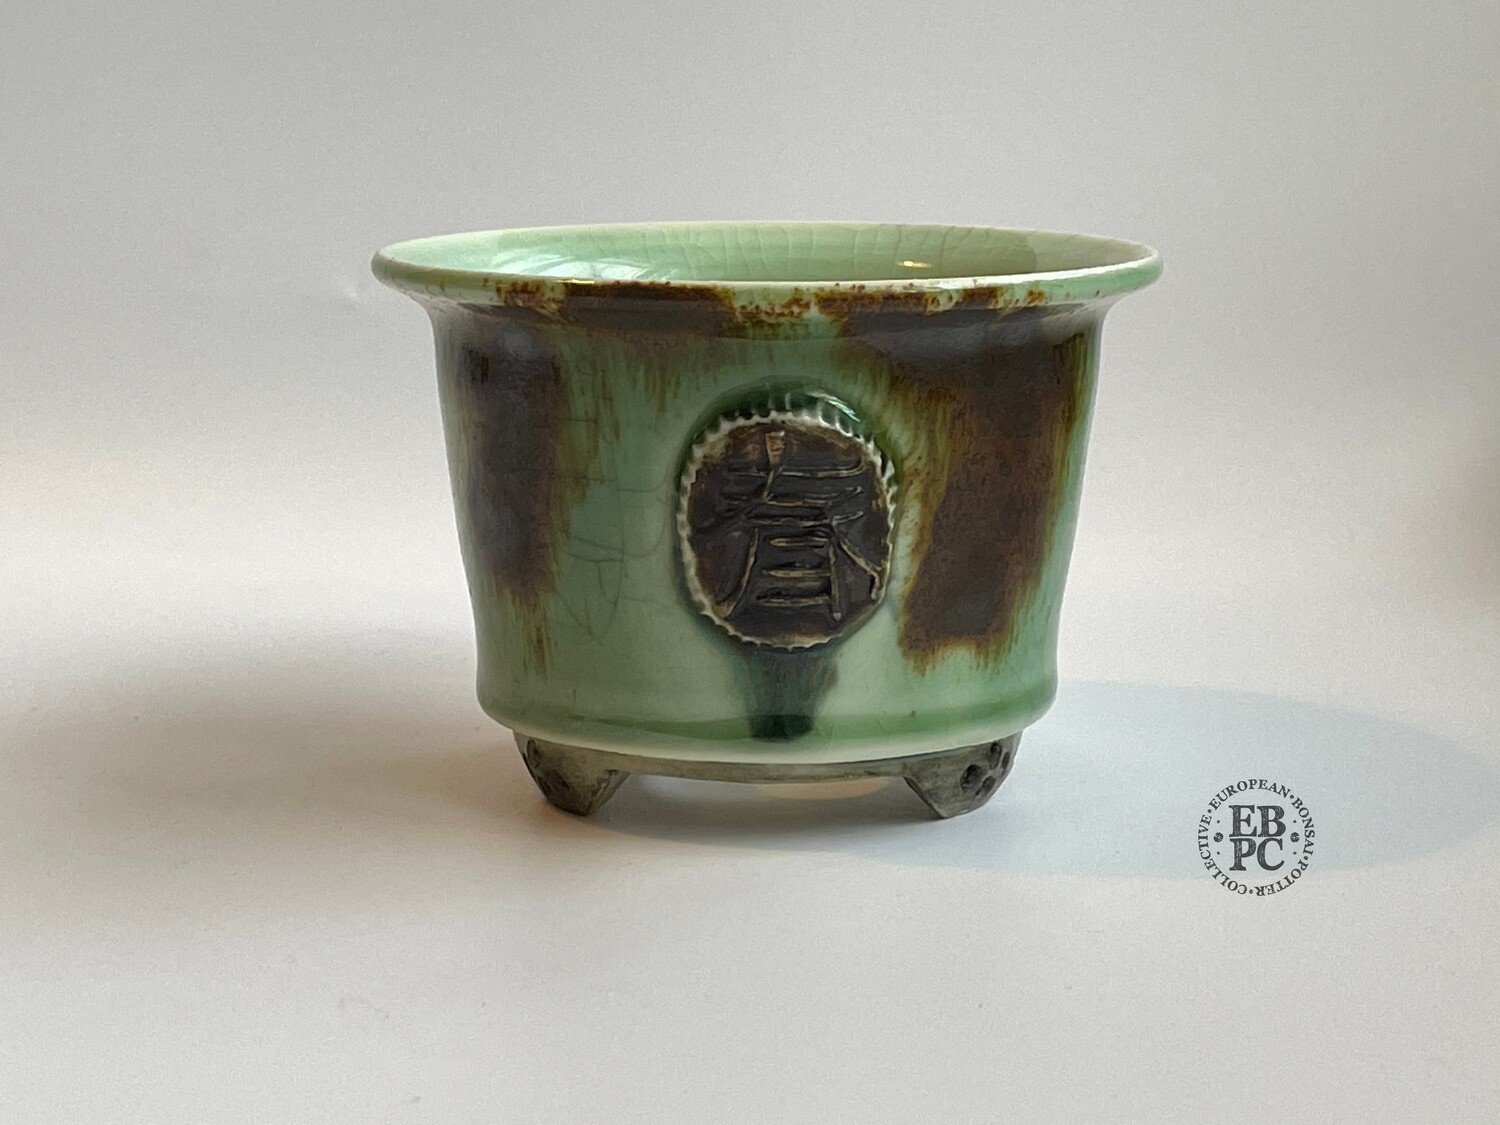 SOLD - EBL Pots - 10.1cm; Porcelain; Shohin / Accent pot; Carved '春' (spring) Motif; Recssed Feet; Aged Blue & Brown Glaze; Elsebeth Ludwigsen